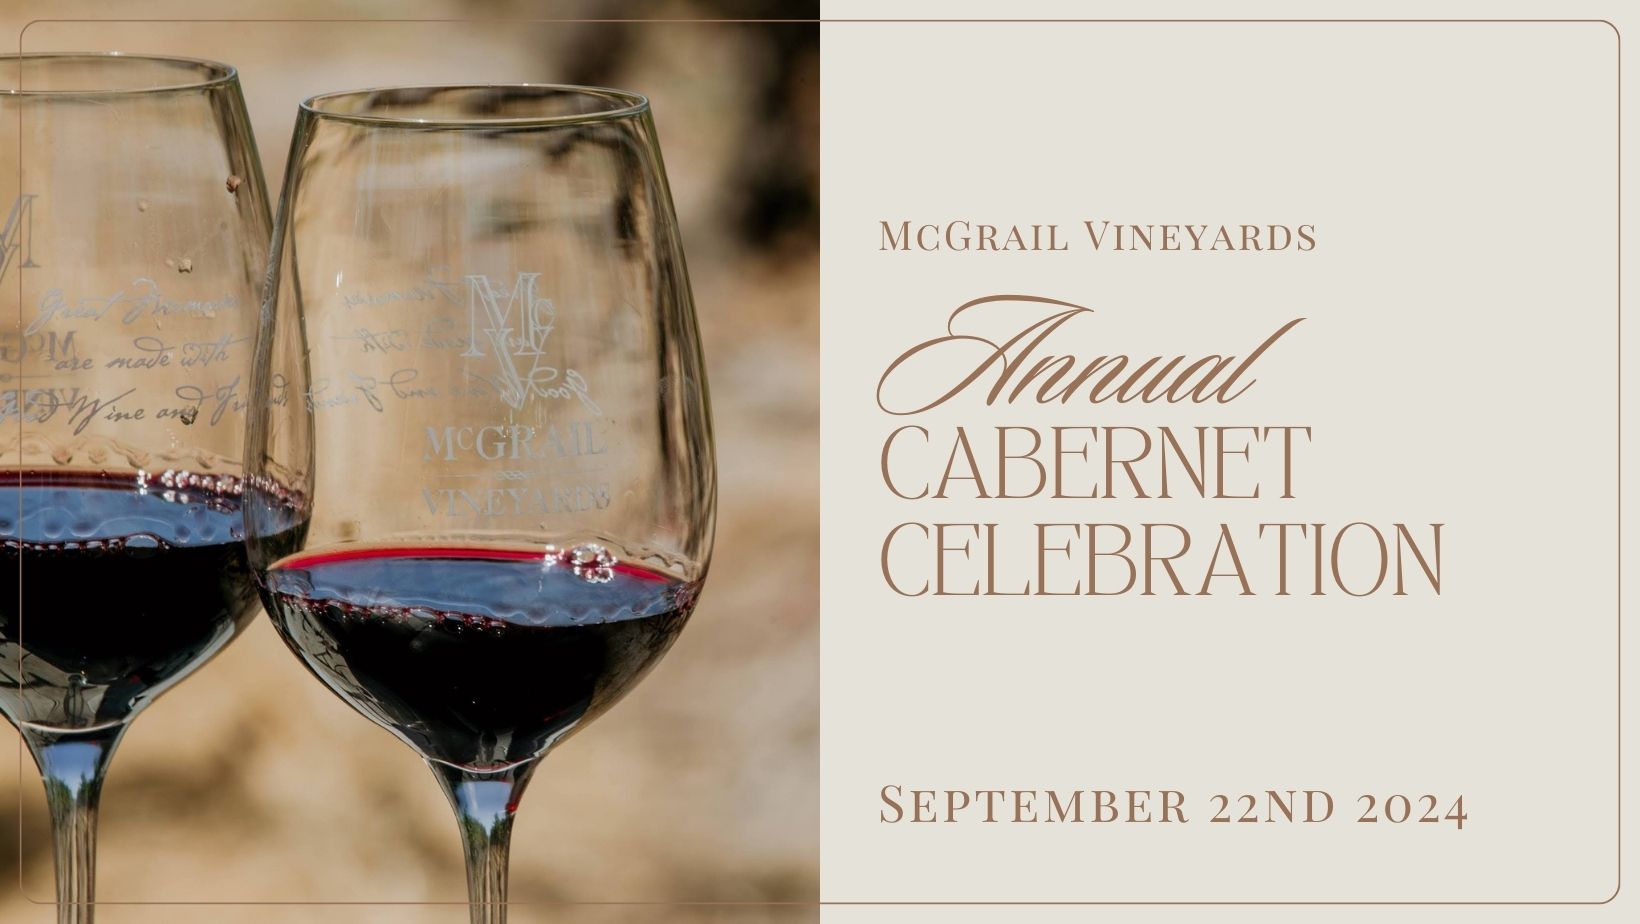 Cabernet Celebration at McGrail Vineyards